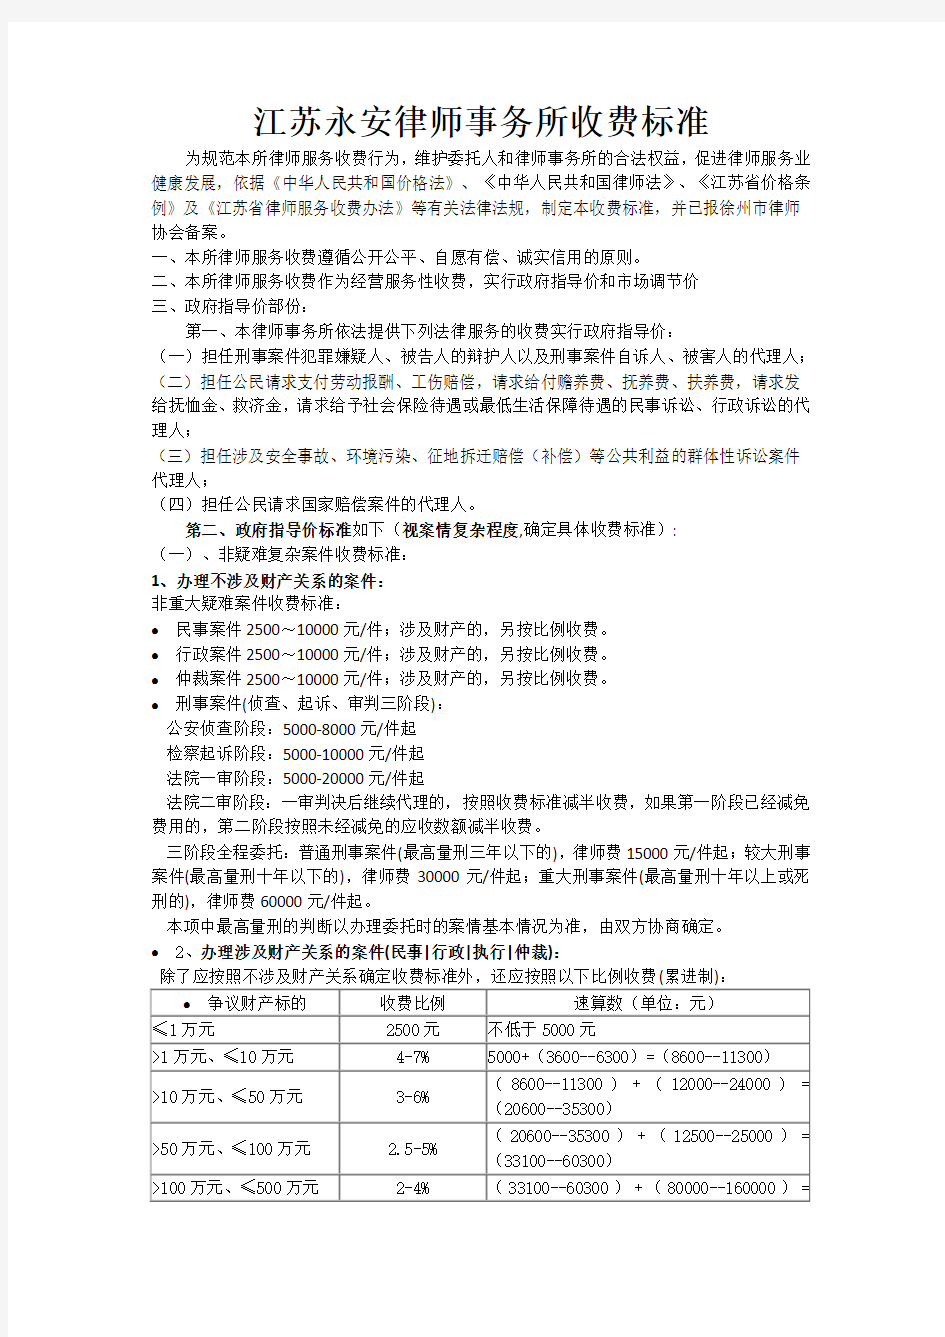 2017江苏省律师事务所收费标准